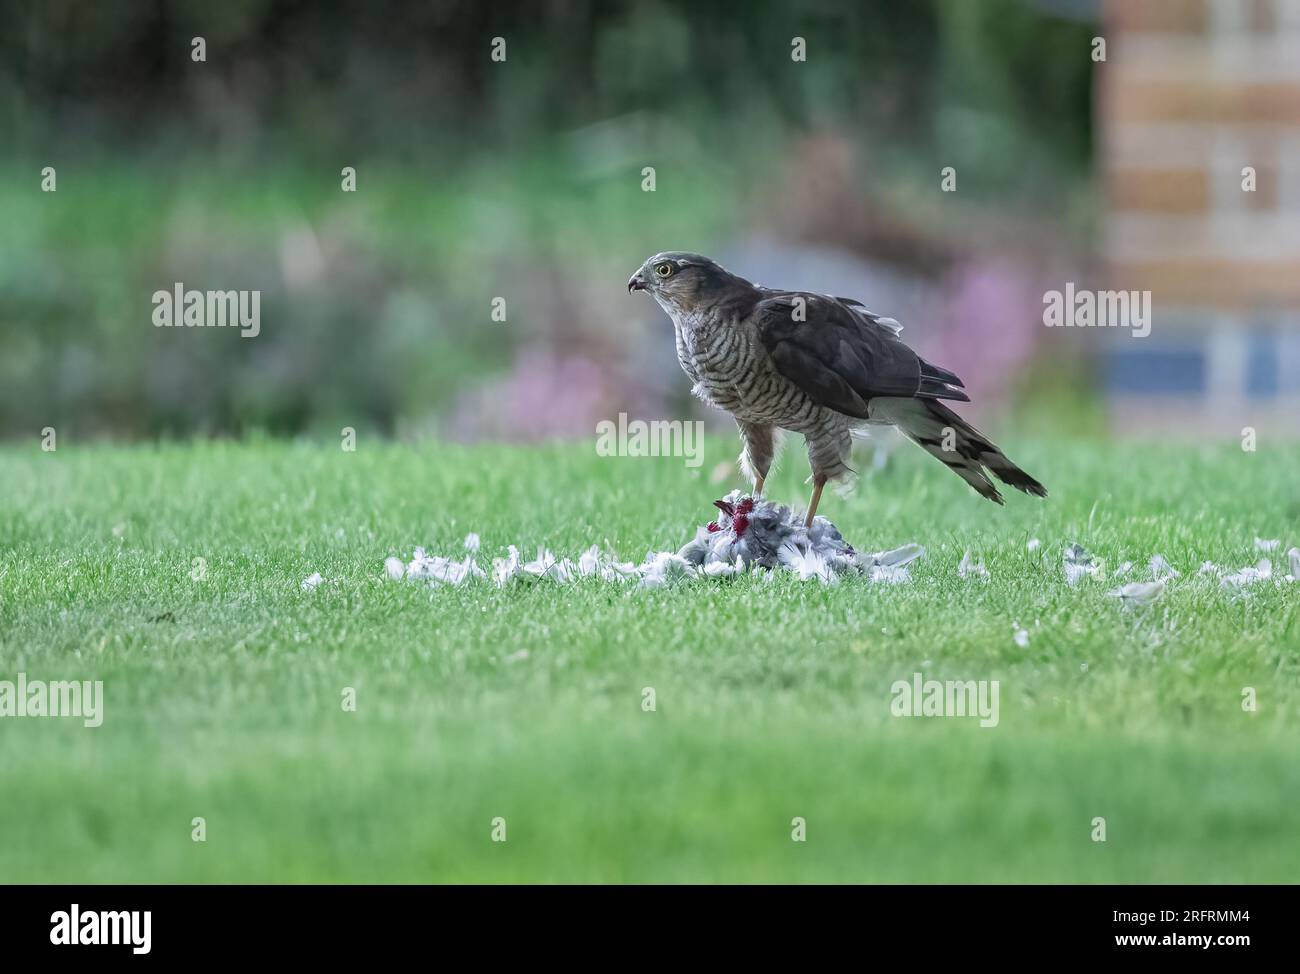 Ein Weibchen Sparrowhawk (Accipiter nisus) mit ihrem blutigen Fang einer Taube. Eine grauenhafte Szene, die sie in einem Suffolk-Garten zerrissen hat. UK Stockfoto